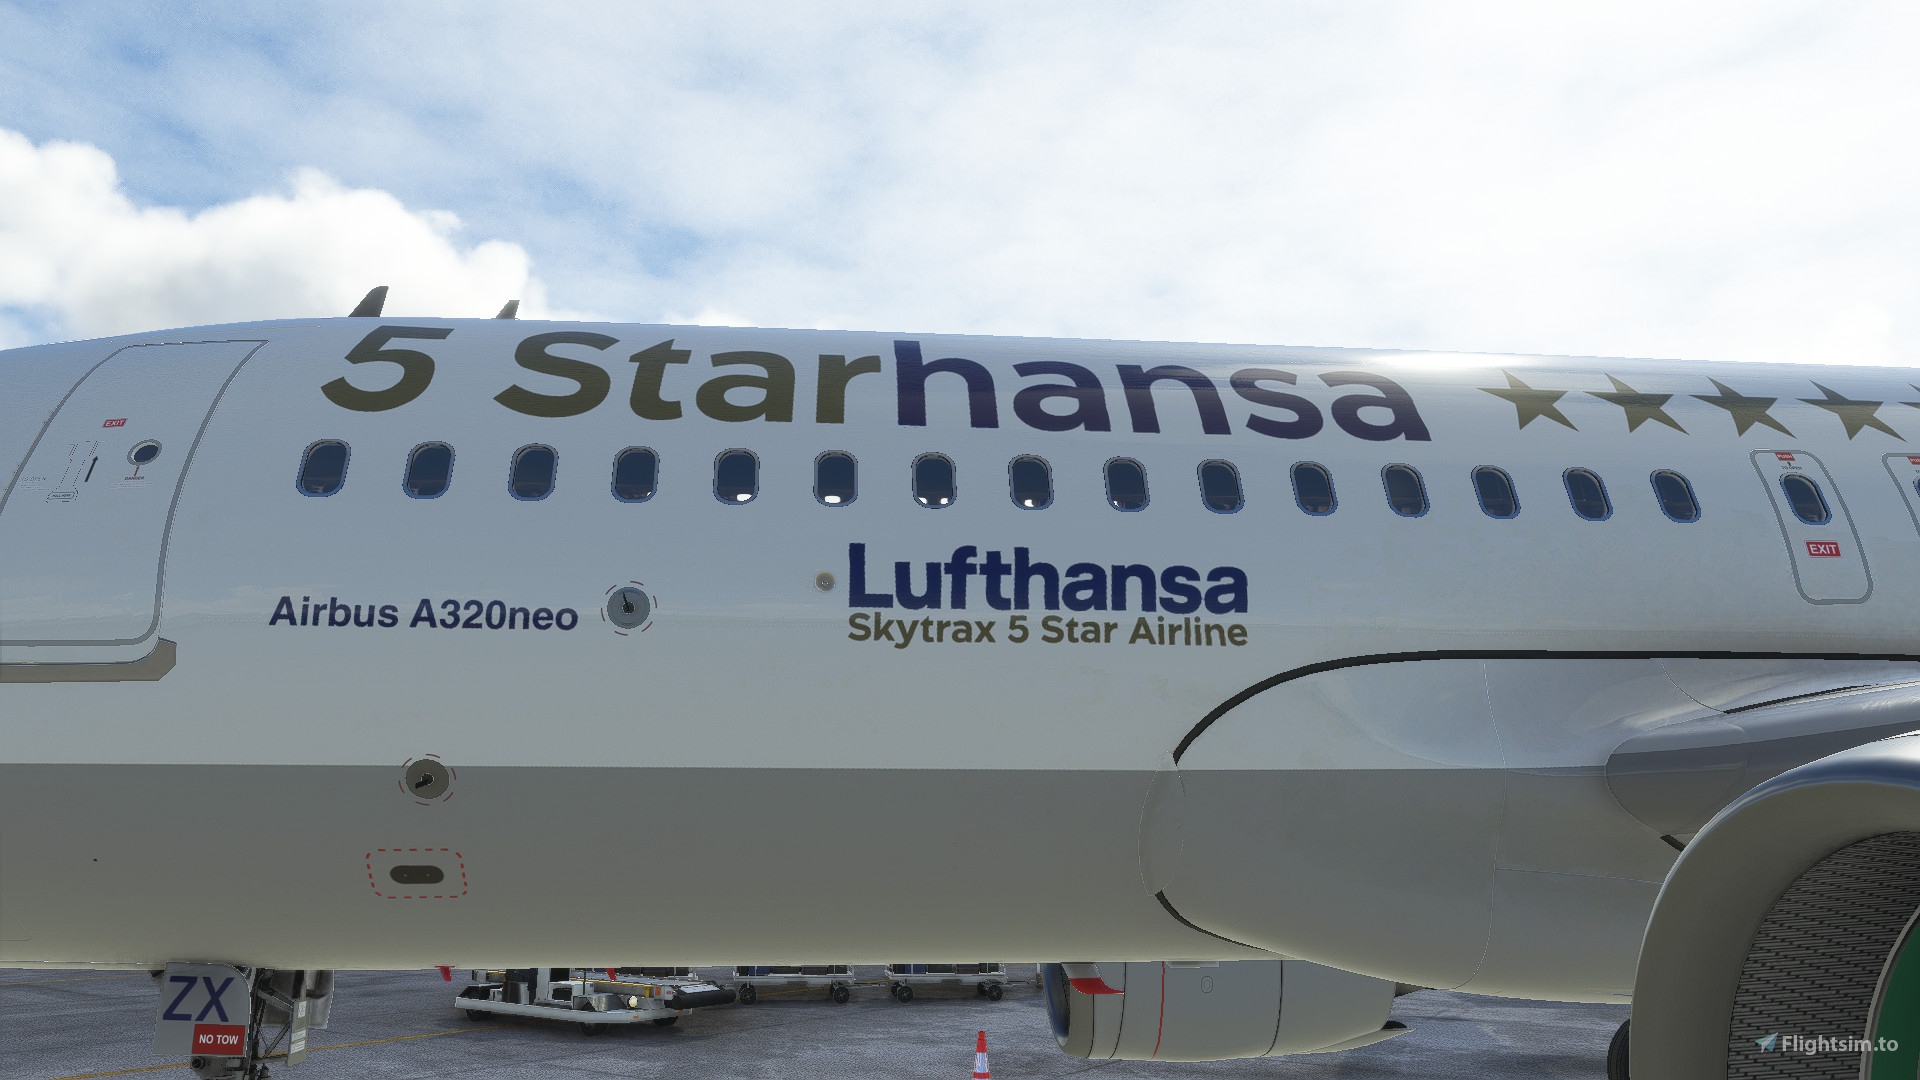 A32NX] [8K] Lufthansa (5 Starhansa) special gold livery D-AIZX for 